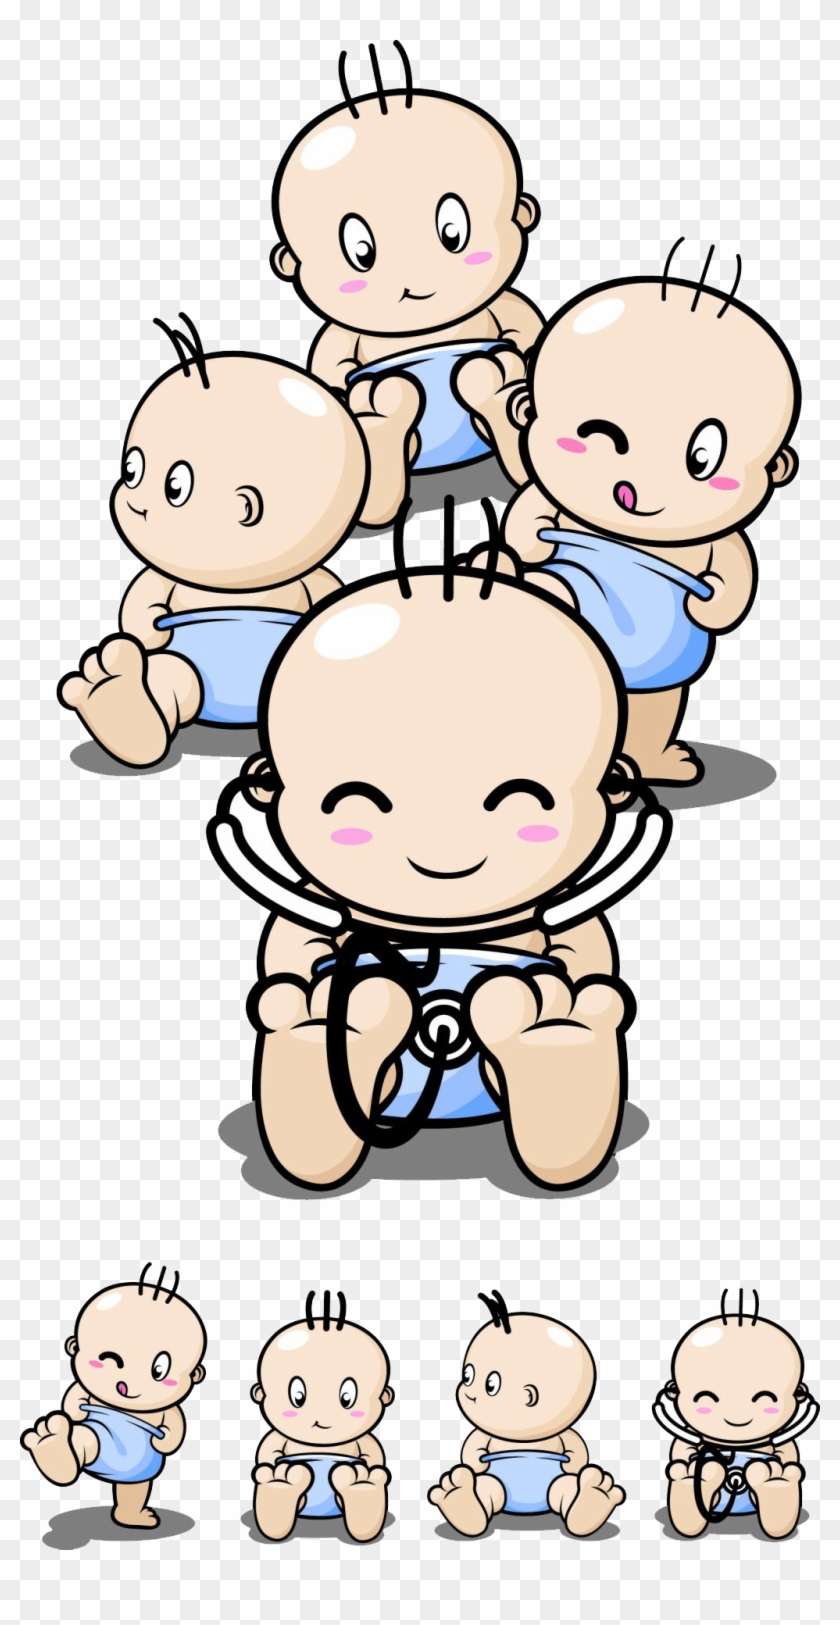 Infant Cartoon Drawing Clip Art - Pertumbuhan Dan Perkembangan Fisik Pada Bayi #1004809